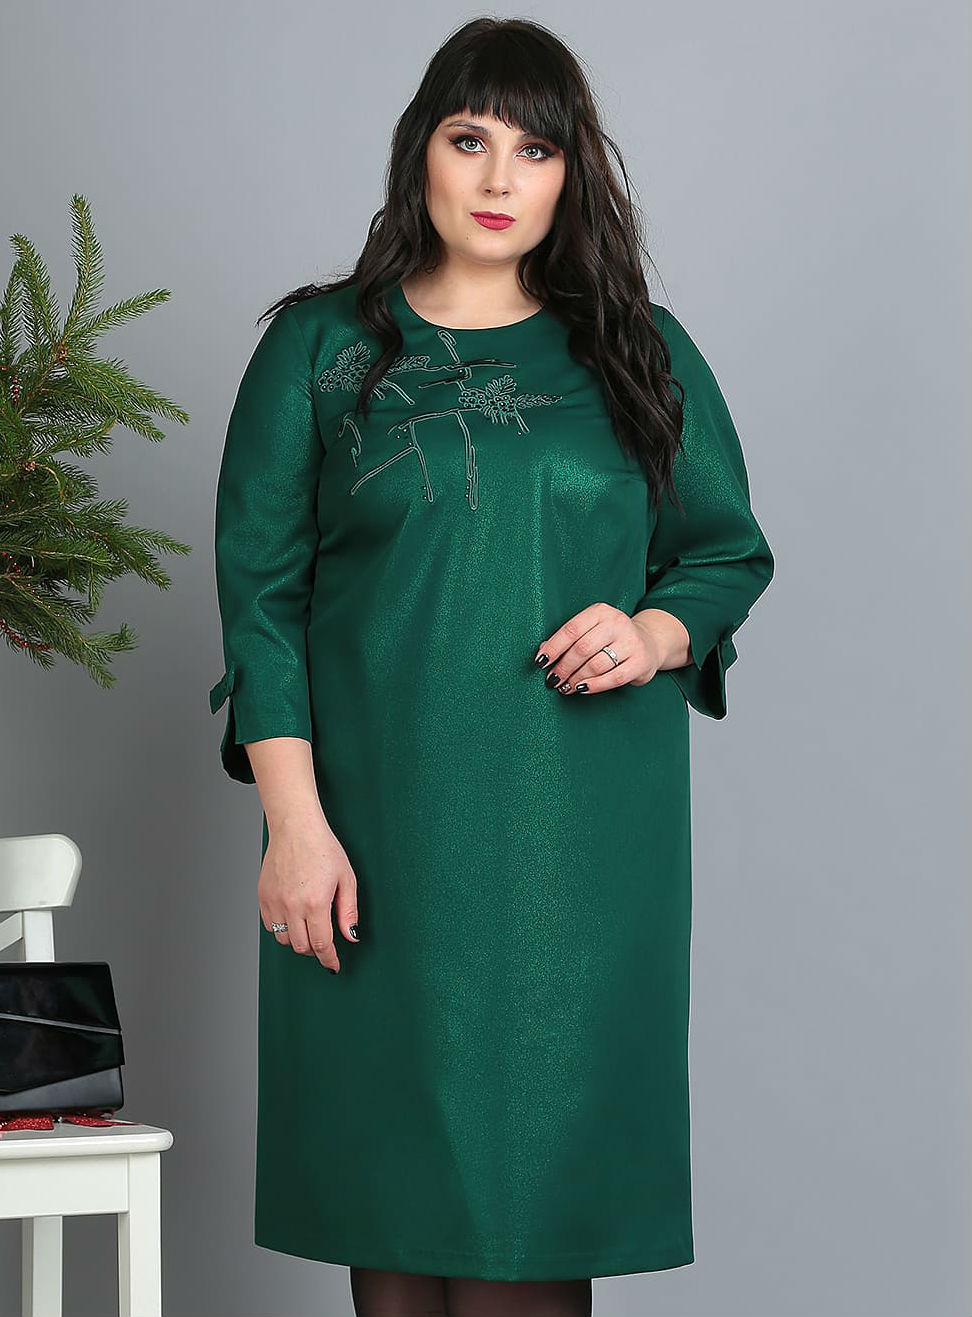 Свободное платье с оригинальной объемной вышивкой, зеленое